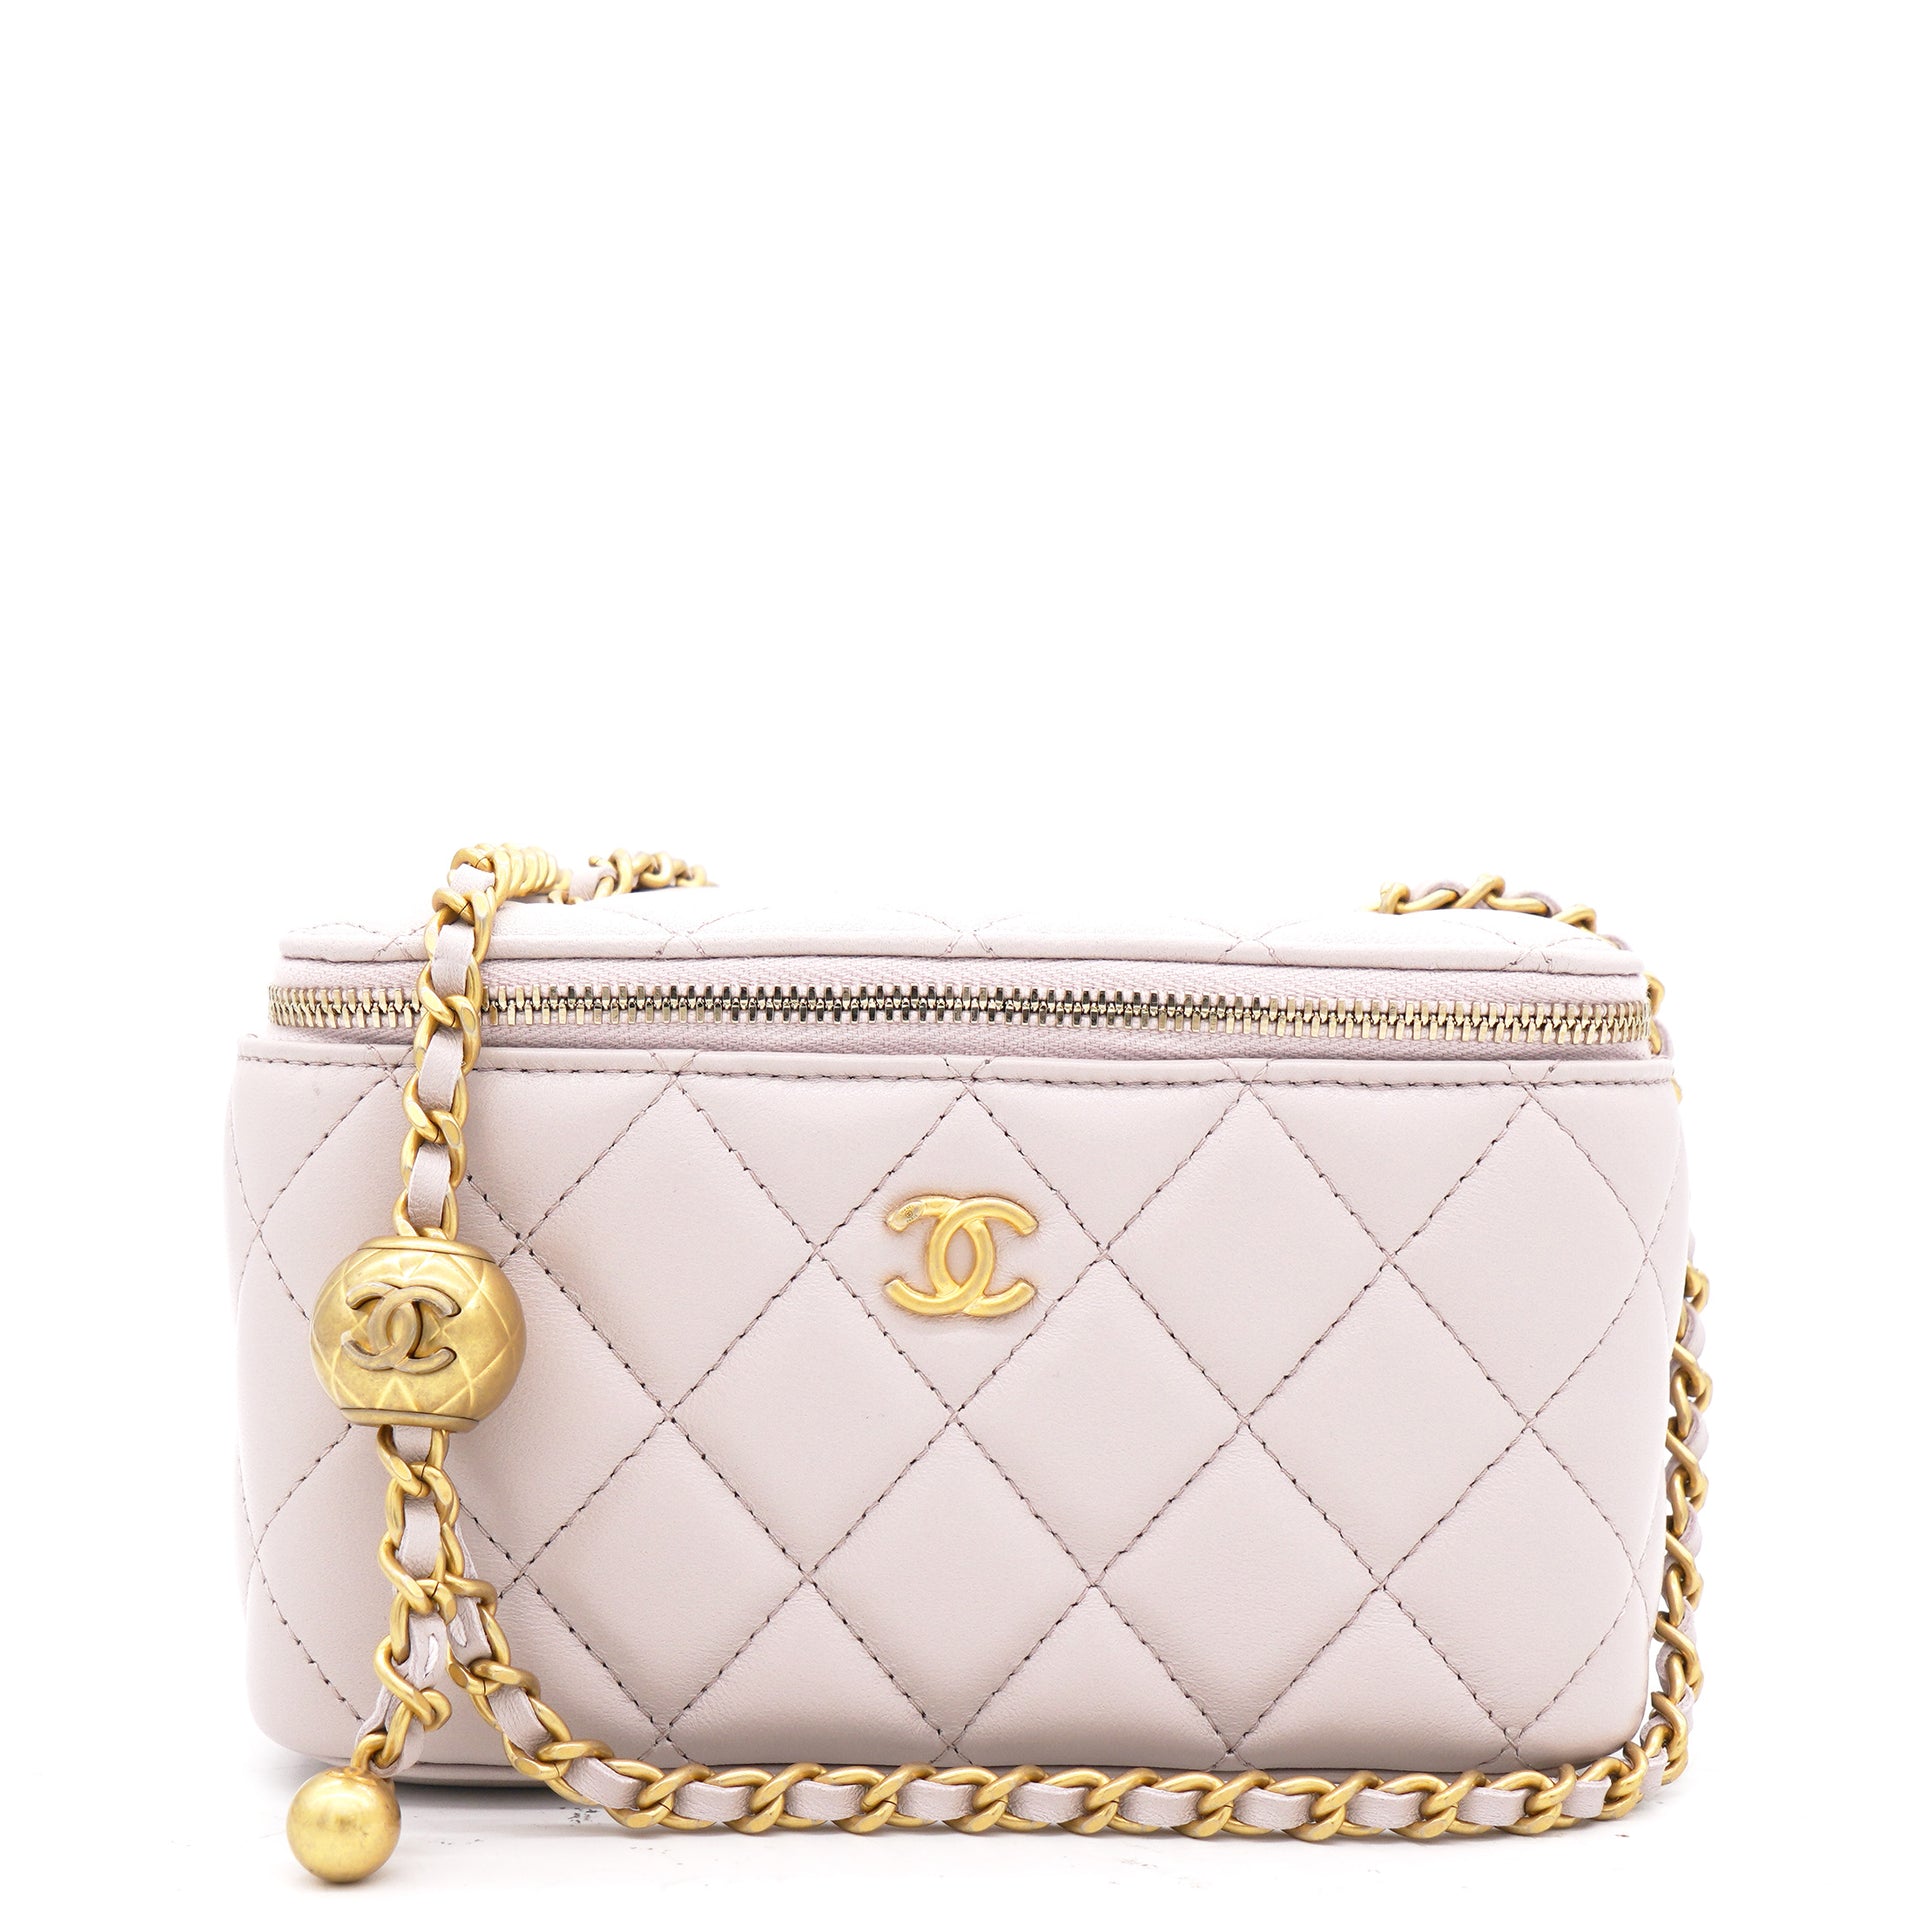 Chanel Mini Light Blue Flap Bag with Handle – Votre Luxe